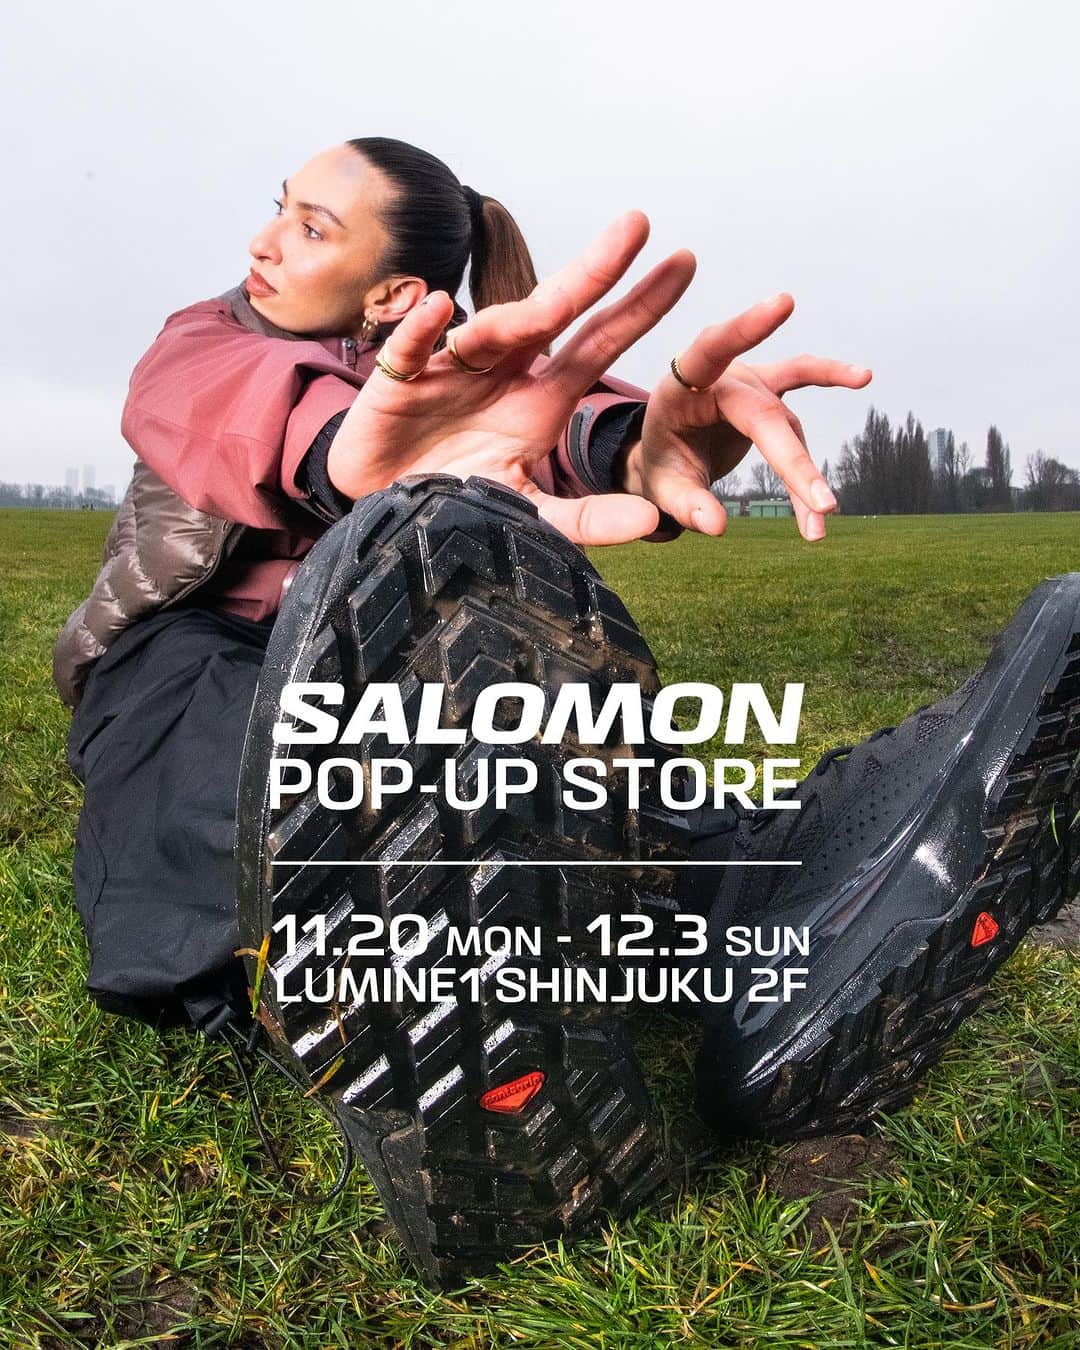 otona MUSEのインスタグラム：「. SALOMON SPORTSTYLEが LUMINE SHINJUKU POP-UP STOREを開催👟🤍  サロモンによるライフスタイルプロジェクト「サロモンスポーツスタイル」のポップアップストアがルミネ新宿にて本日から開催！期間は12月3日（日）まで。  今回のポップアップのために用意されたXT-4 OGのEXCLUSIVEカラーも登場。ホワイトをベースとした艶やかなグラデーションが冬のスタイリングに彩りを与えてくれそうです❄️  サロモンのスニーカーは実際に履いてみるとその快適さの虜！みなさんもこの機会にぜひ店頭でお試しあれ🤝  SALOMON SPORTSTYLE POP-UP STORE 期間：11月20日（月）〜12月3日（日） 場所：東京都新宿区西新宿1–1–5 ルミネ新宿ルミネ1 – 2F Gallery1 ※営業時間はルミネ新宿に準じます。  #salomon #salomonsportstyle #スニーカー#サロモン #otonaMUSE#オトナミューズ」